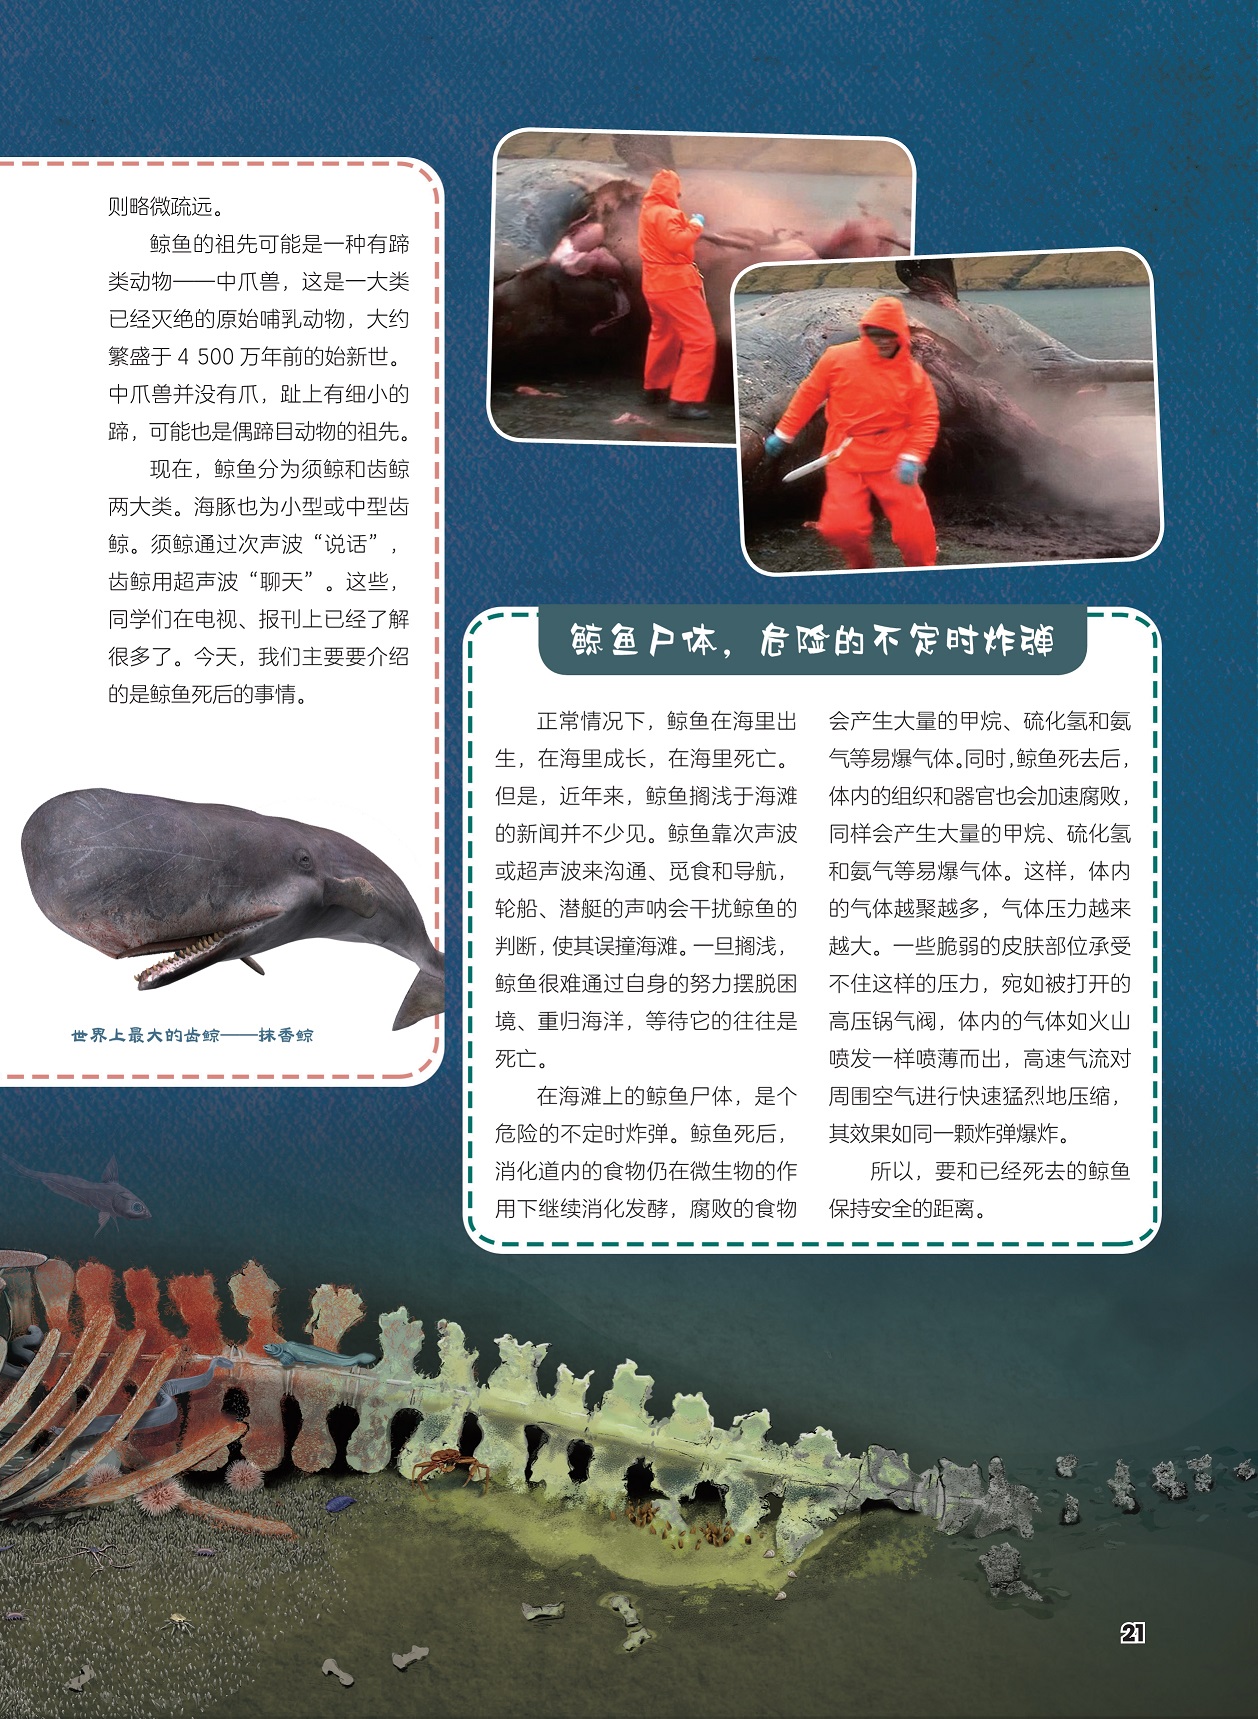 中爪兽是已经灭绝的原始哺乳动物,要和已经死去的鲸鱼保持安全的距离